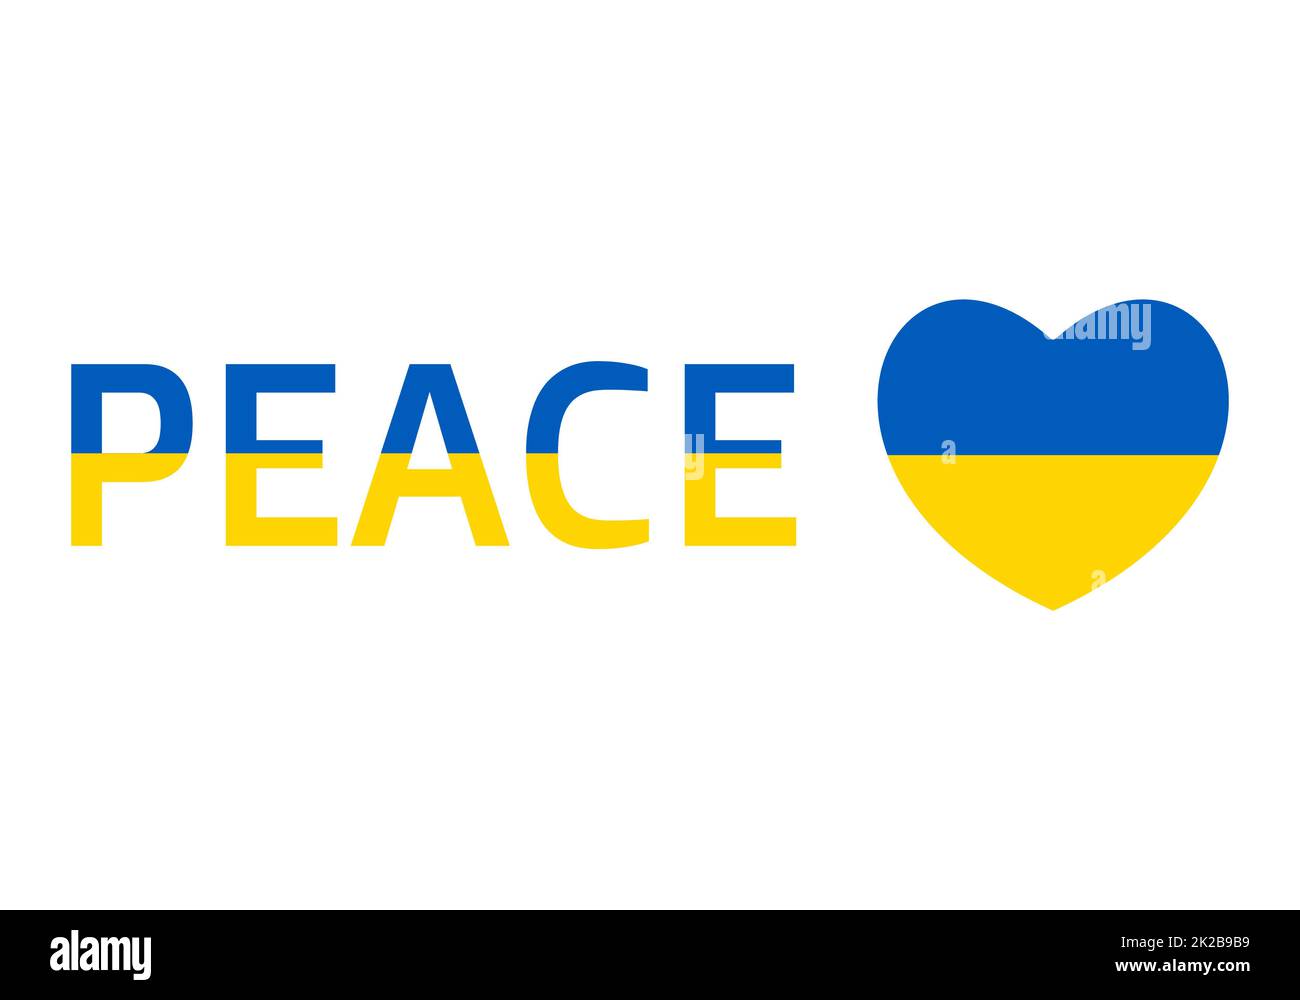 Icône drapeau de l'Ukraine en forme de coeur et texte de paix. Drapeau patriotique ukrainien abstrait avec symbole d'amour. Idée conceptuelle - avec l'Ukraine dans son coeur. Soutien au pays pendant l'occupation. Banque D'Images